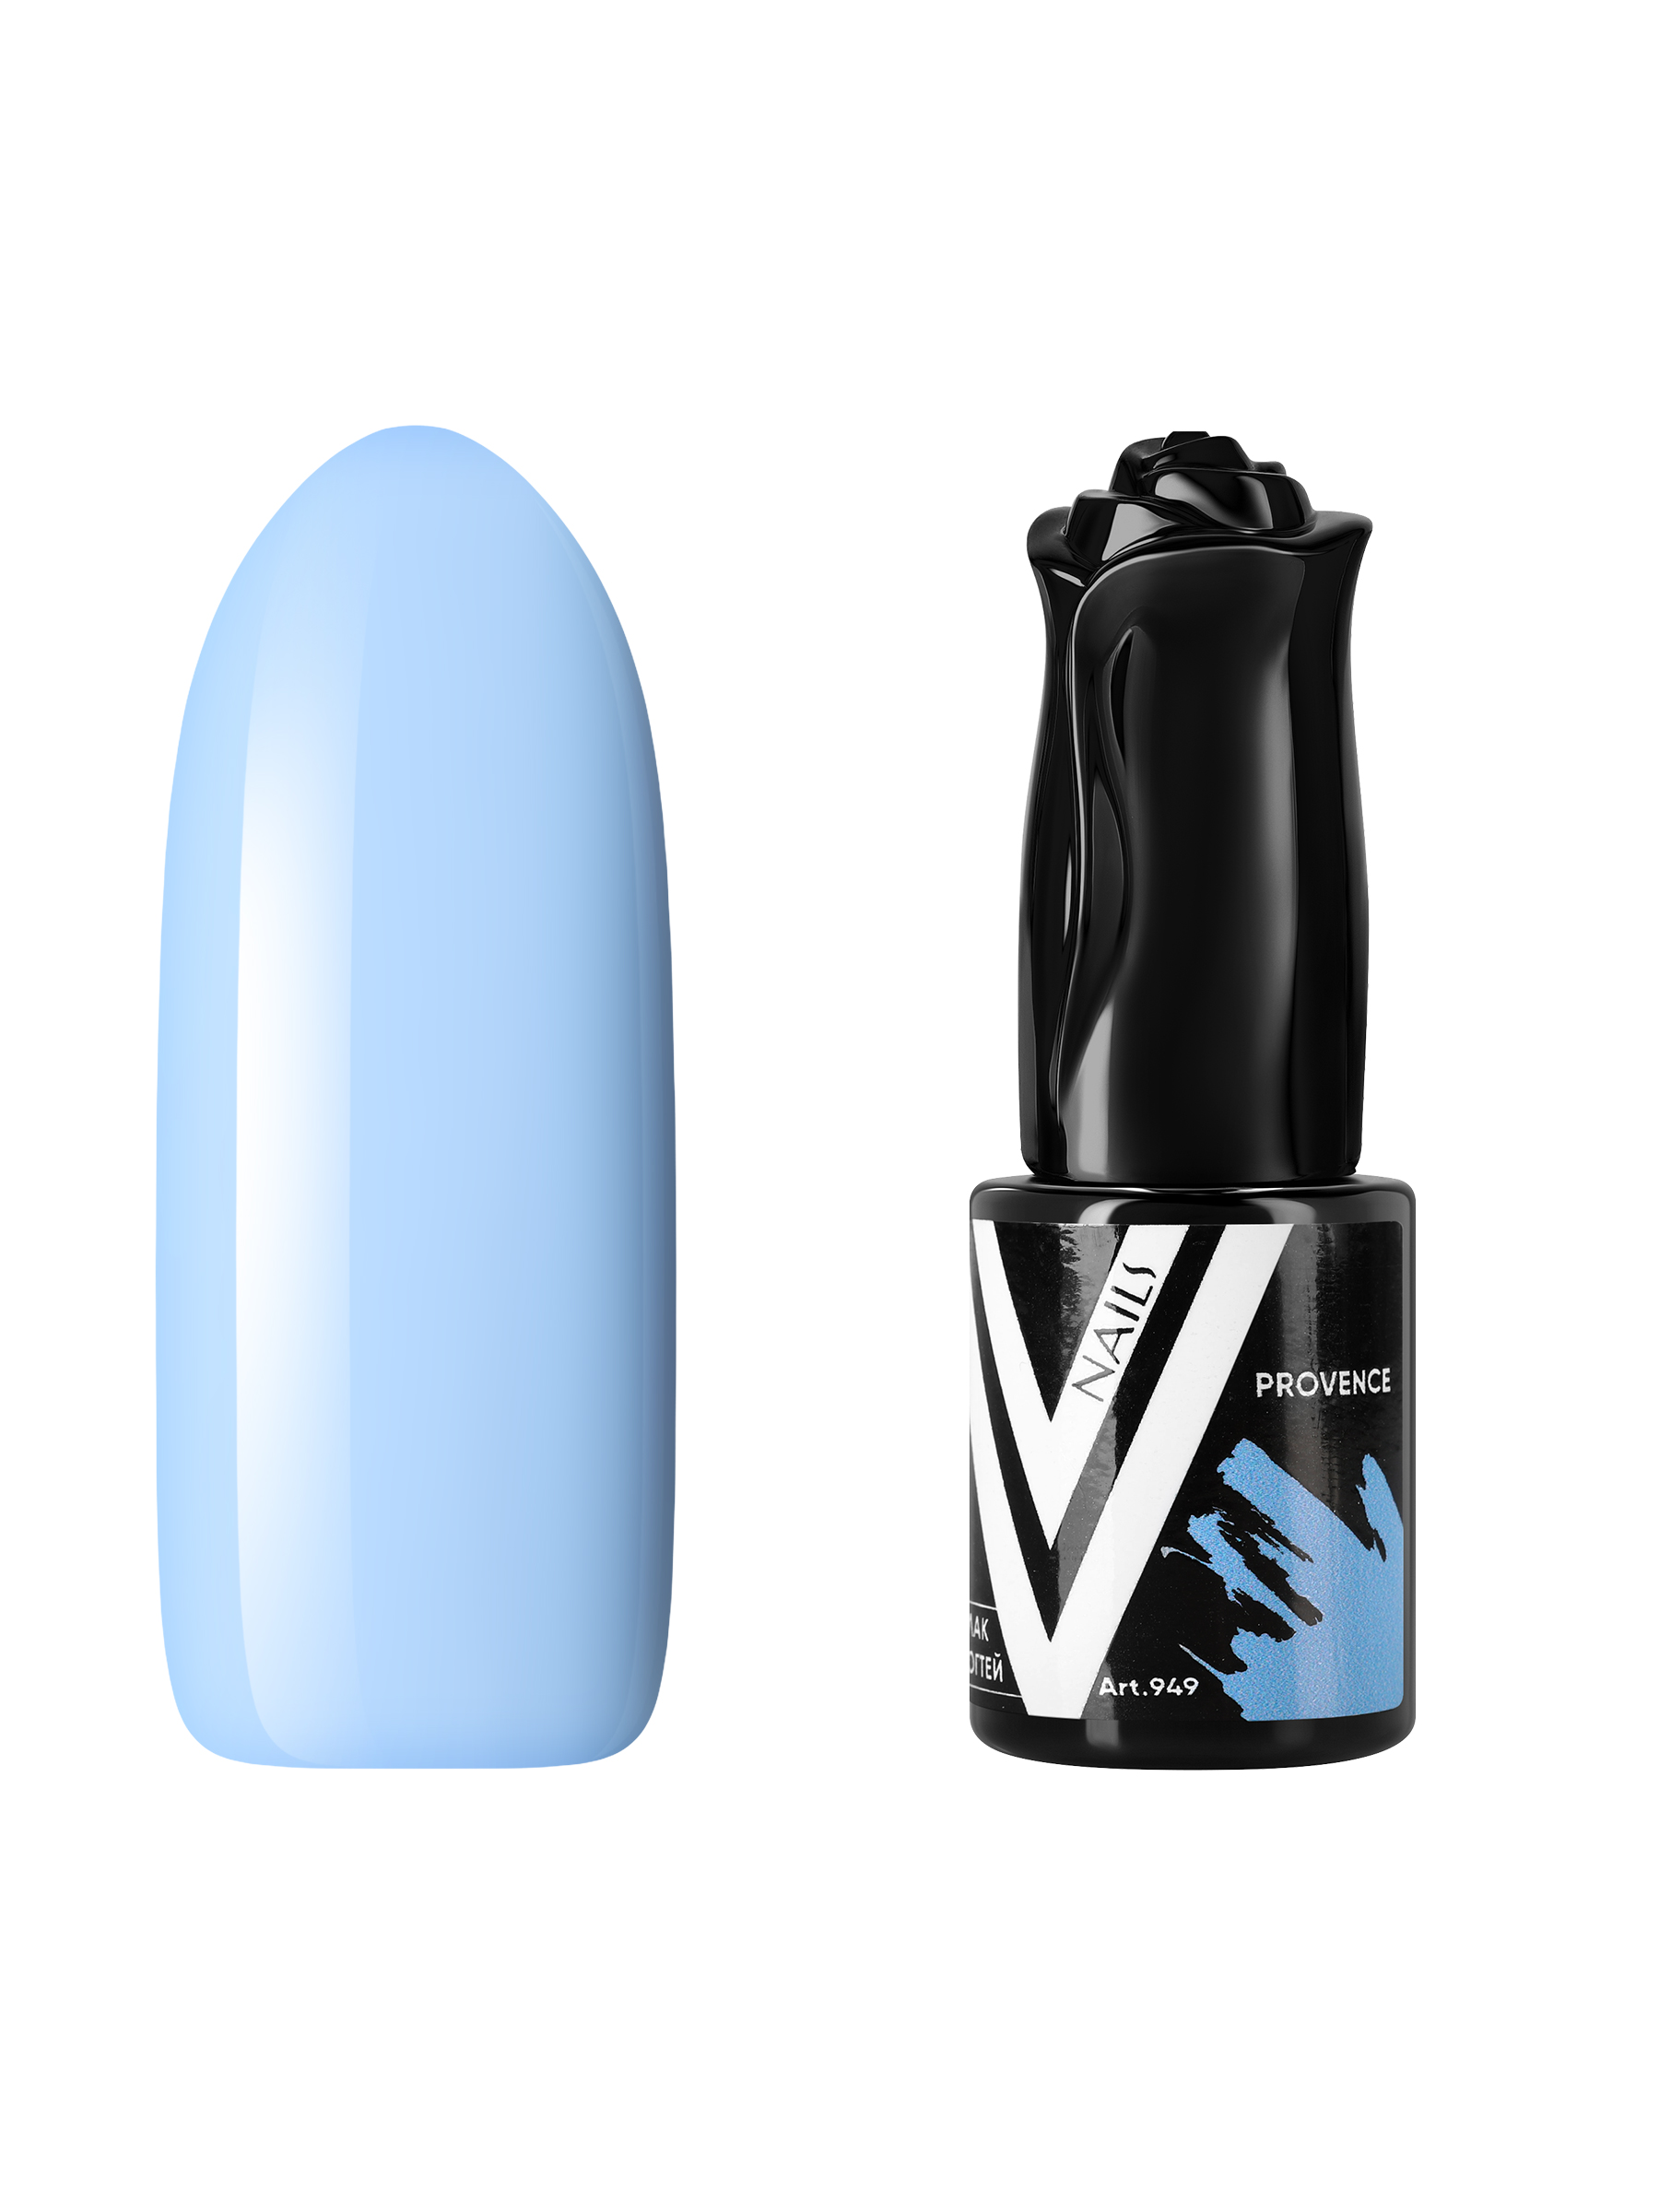 Гель-лак для ногтей Vogue Nails плотный самовыравнивающийся, светлый, голубой, 10 мл